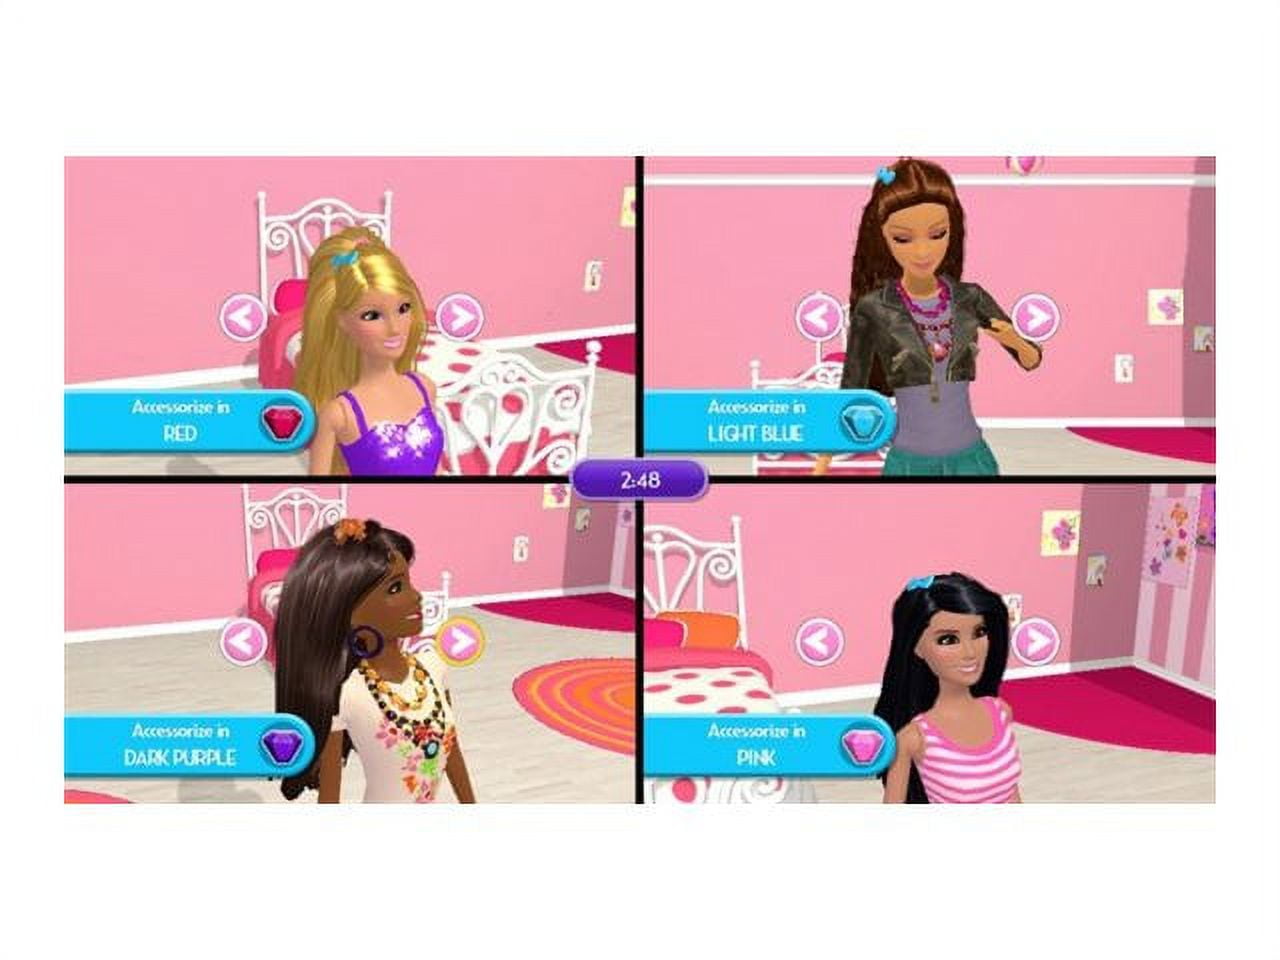 Jogo Barbie: Dreamhouse Party Wii U Majesco Entertainment em Promoção é no  Bondfaro